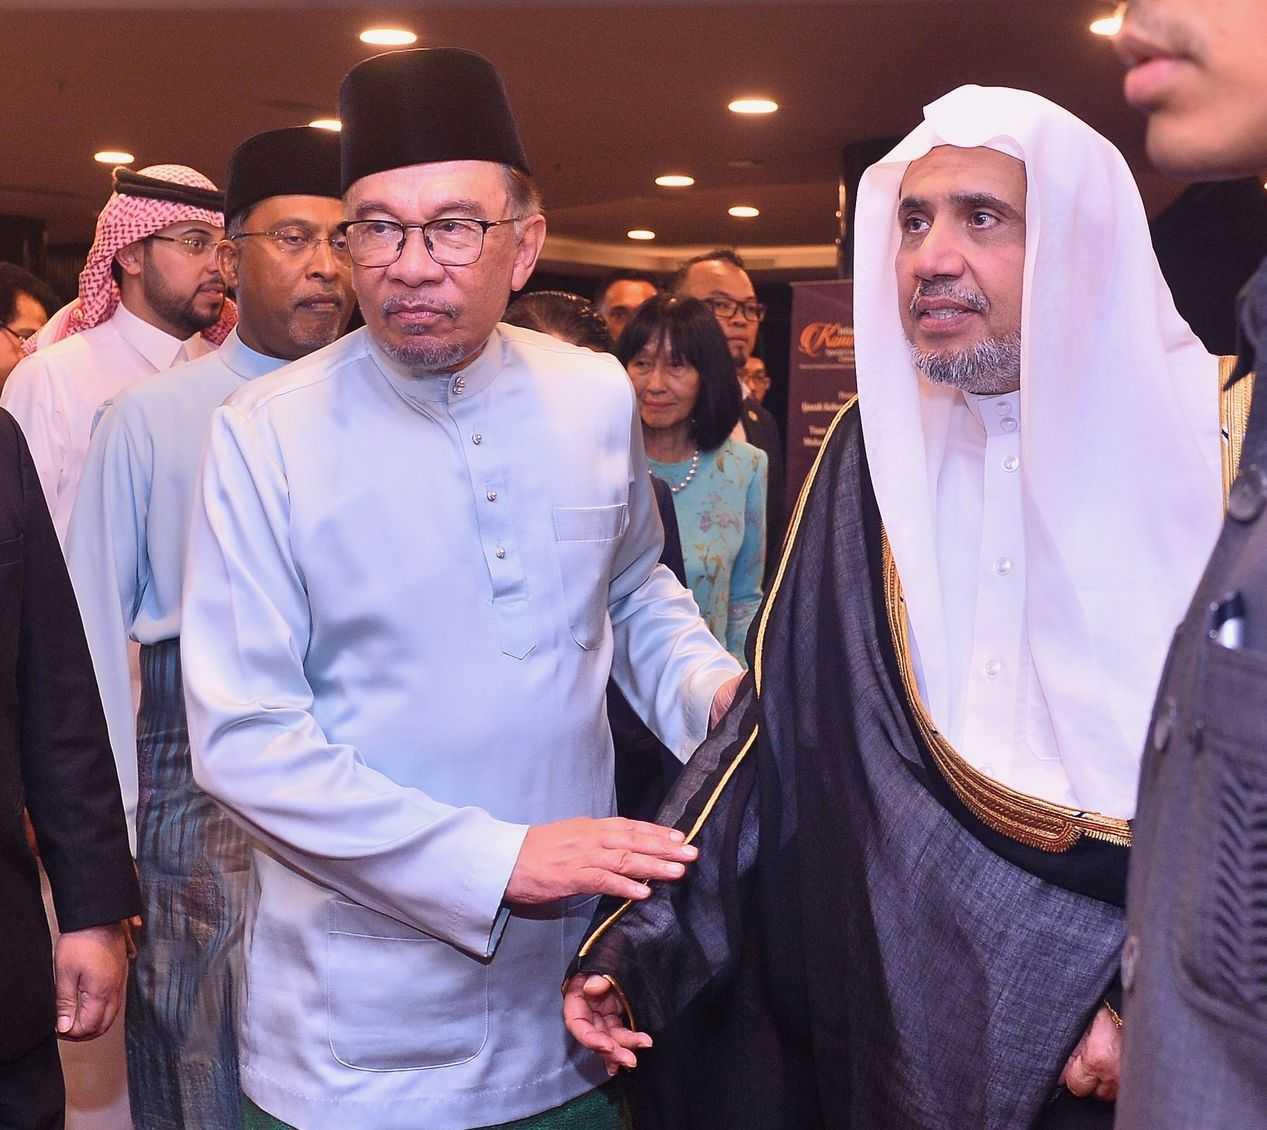 Anwar Ibrahim meraikan Mohammad Abdulkarim Al-Issa, seorang tokoh Arab Saudi yang dikritik kerana hubungan mesranya dengan pemimpin dan kumpulan Zionis.